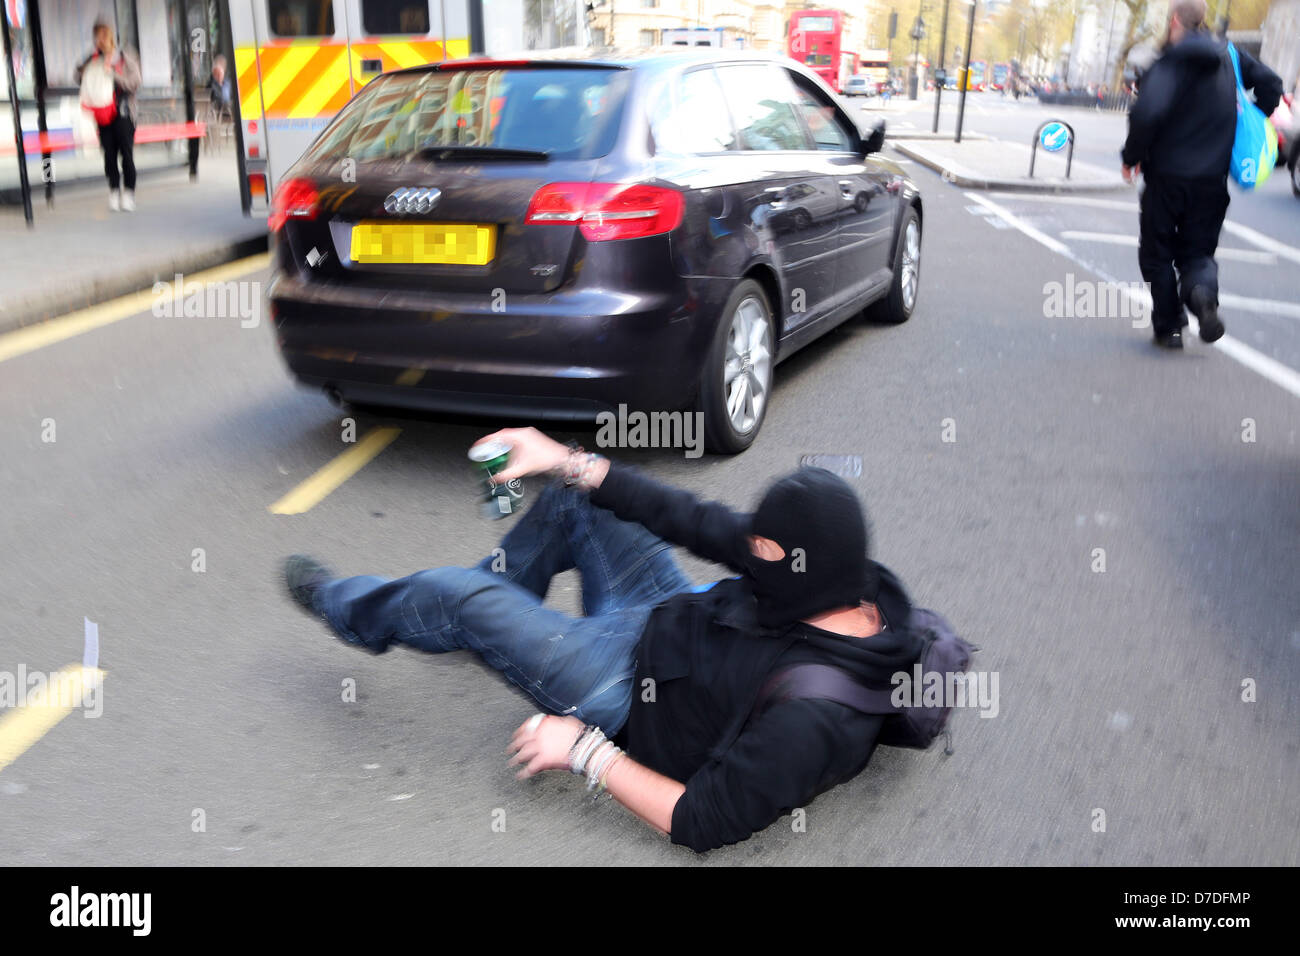 Londres, Royaume-Uni. 4e mai 2013. Les manifestants presque écrasé par un conducteur s'opposer à eux assis dans la rue au Royaume-Uni anonyme manifestation anti-austérité, Londres, Angleterre. Crédit : Paul Brown / Alamy Live News Banque D'Images